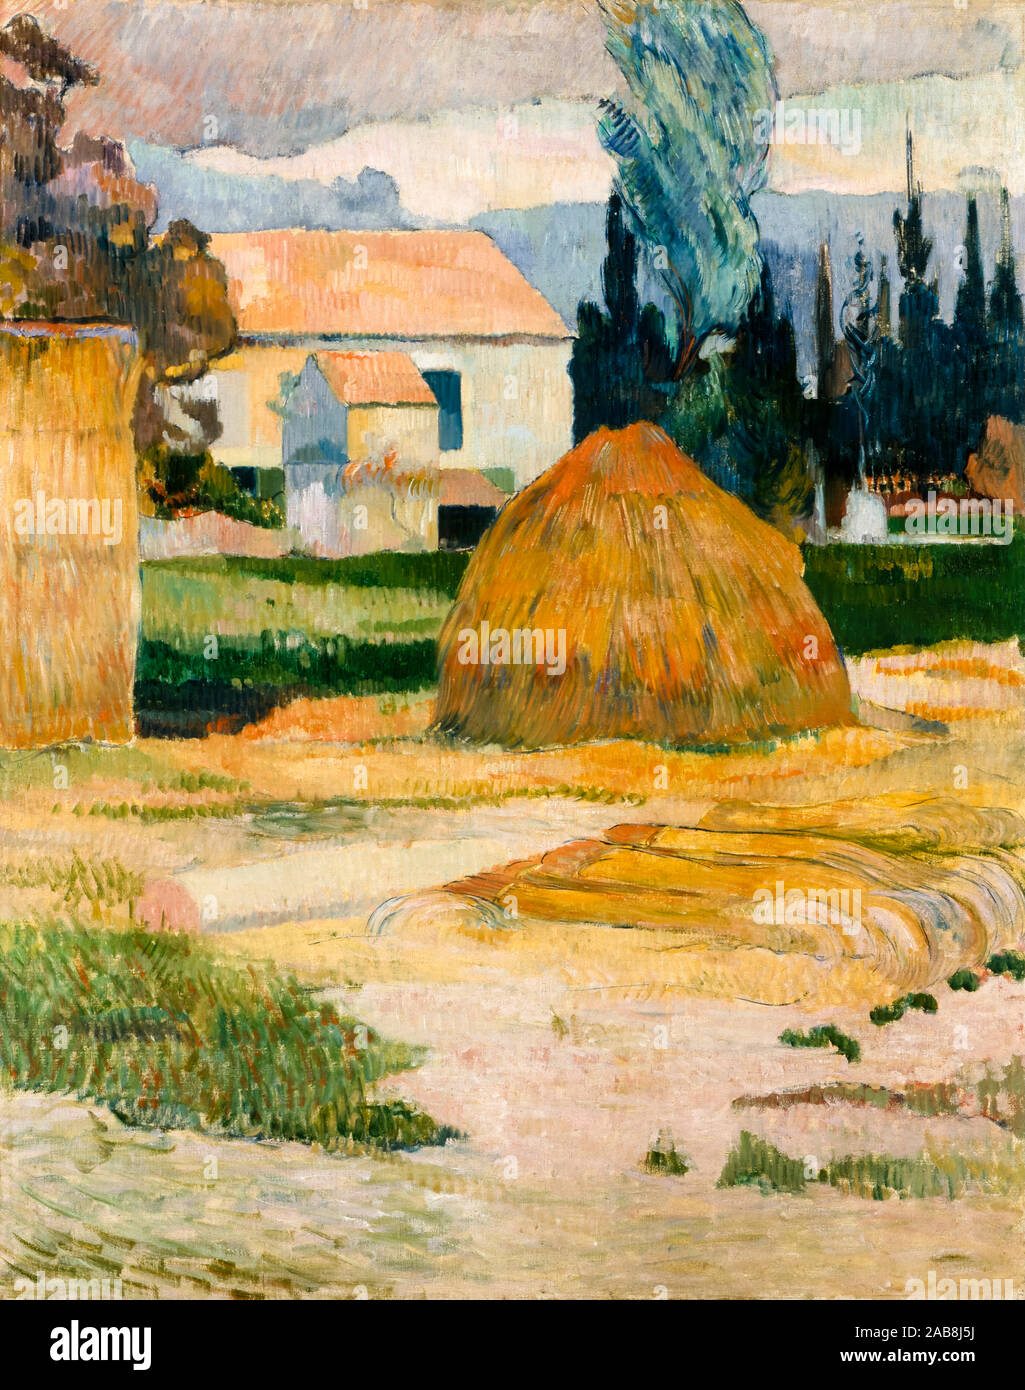 Paul Gauguin, Paysage près d'Arles, la peinture de paysages, 1888 Banque D'Images